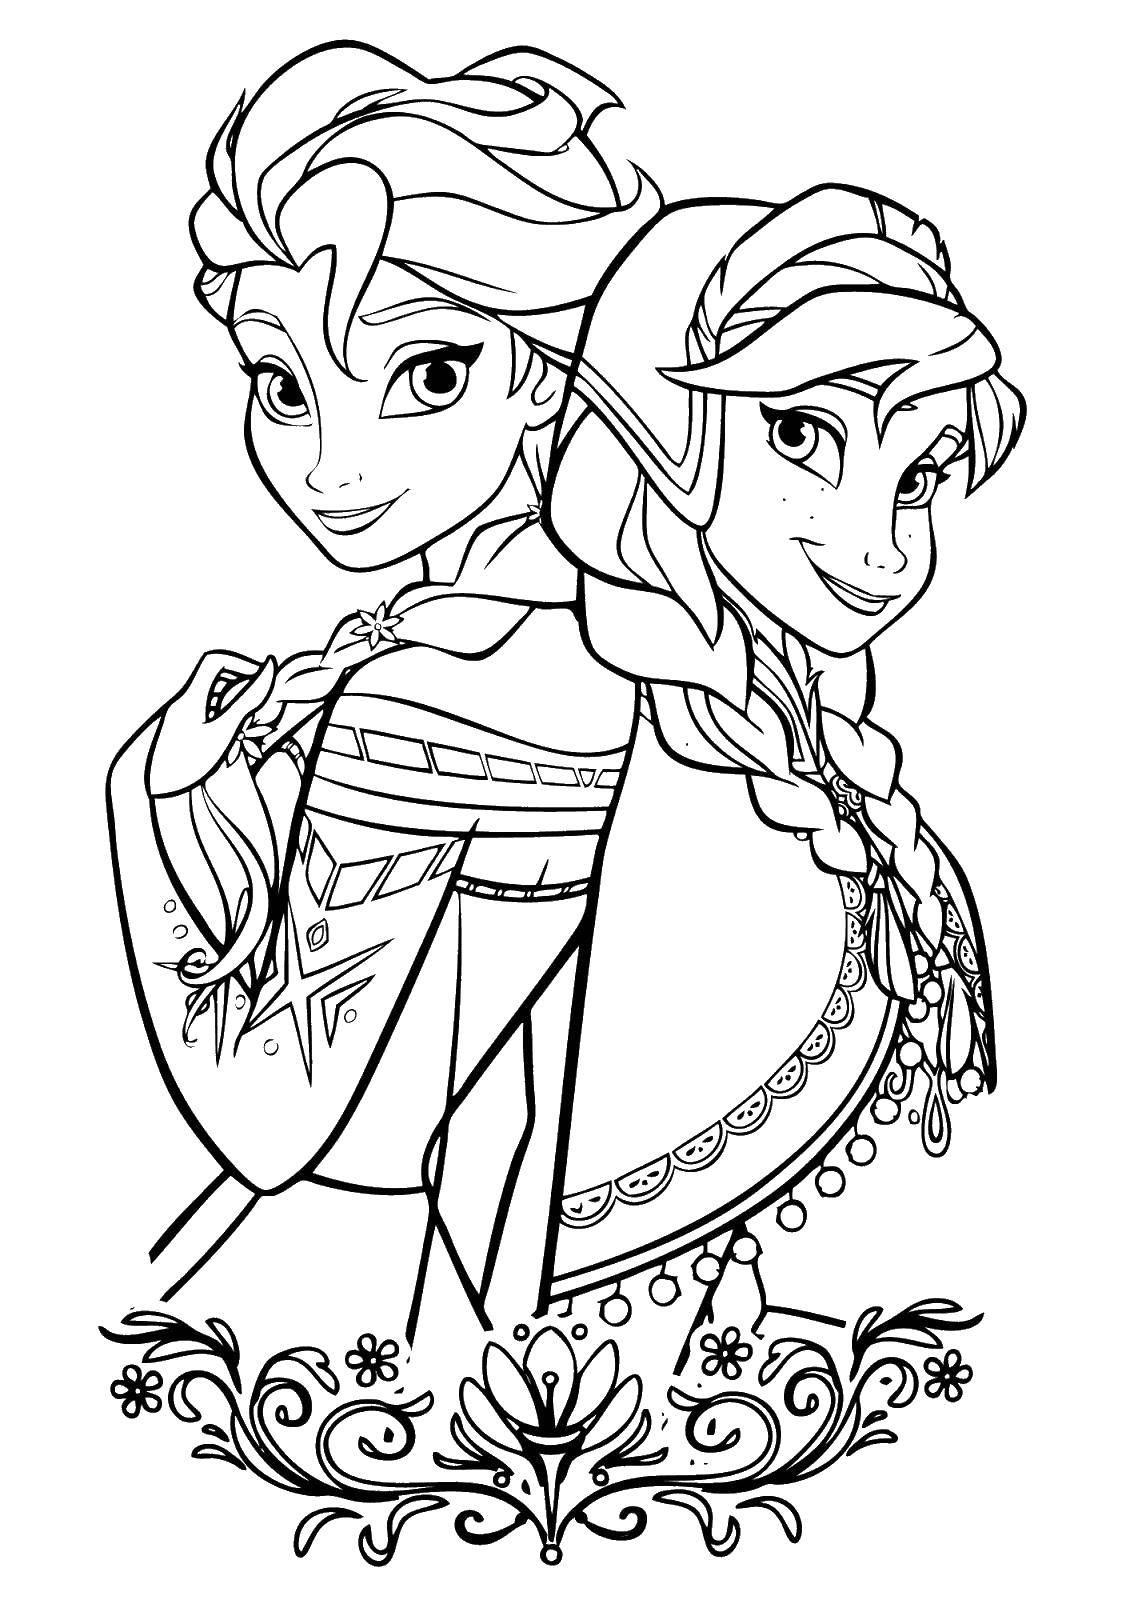 Coloring Elsa and Anna. Category cartoons. Tags:  Elsa, cartoon.